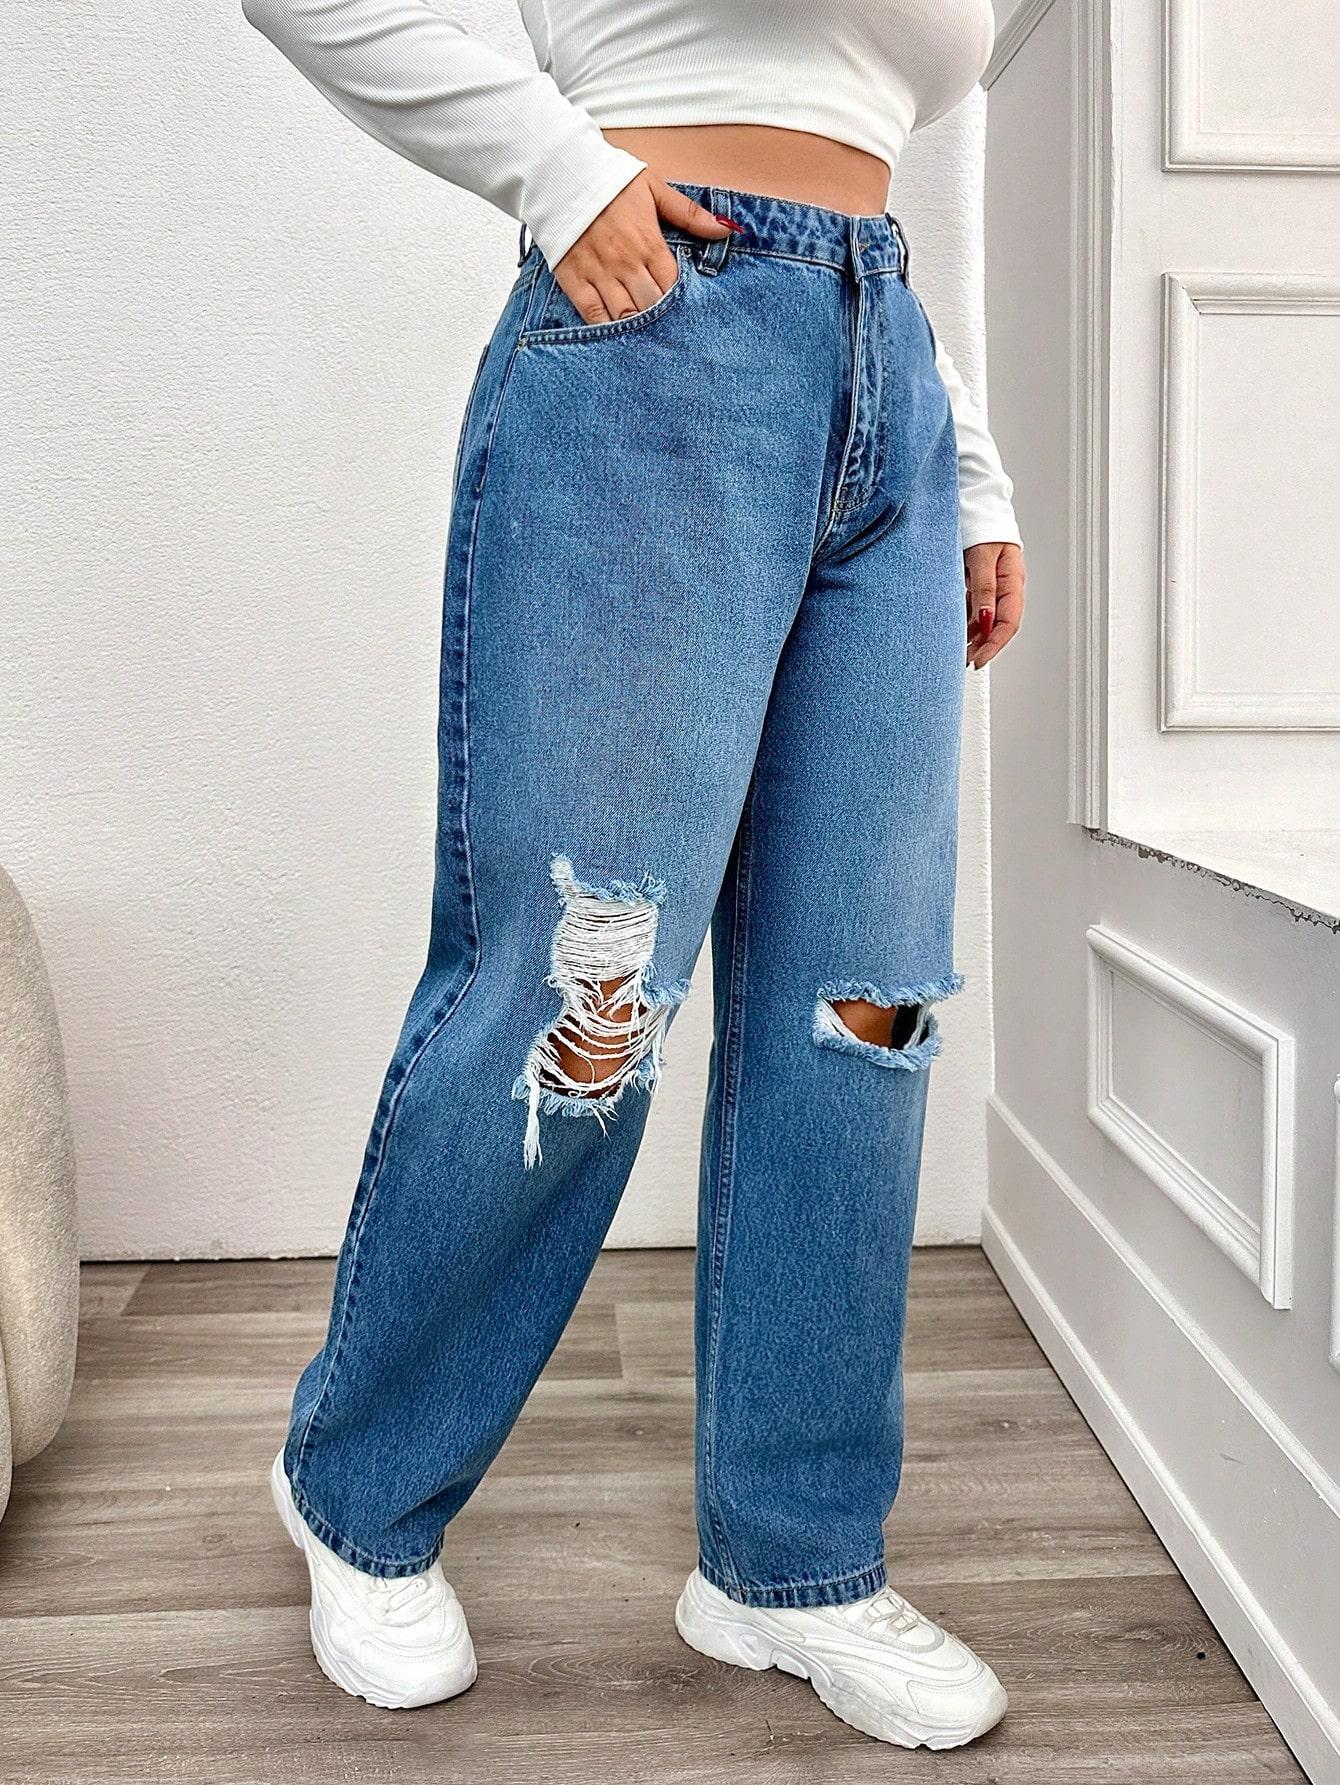 spodnie jeans dziury wysoki stan